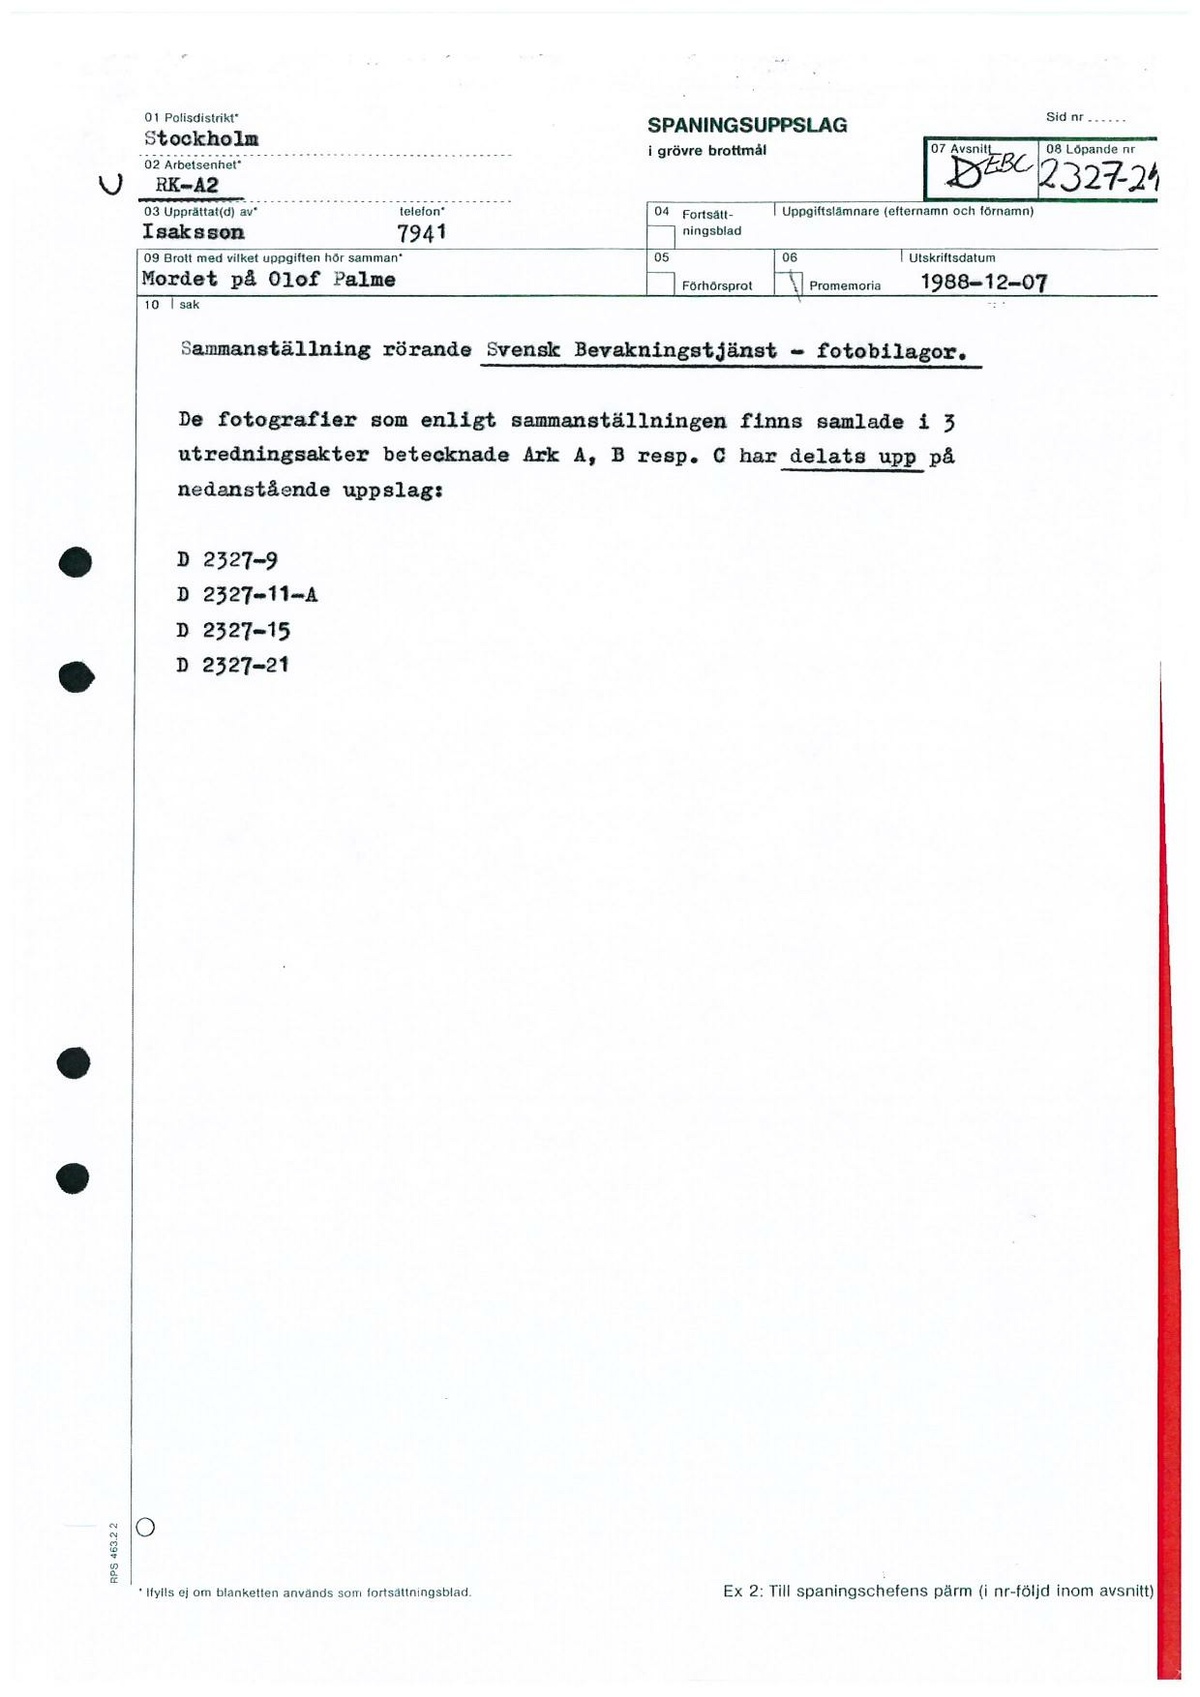 Pol-1987-04-02 EBC2327-10-A Polisbil-kommunikationsradio-utanför-bostaden.pdf